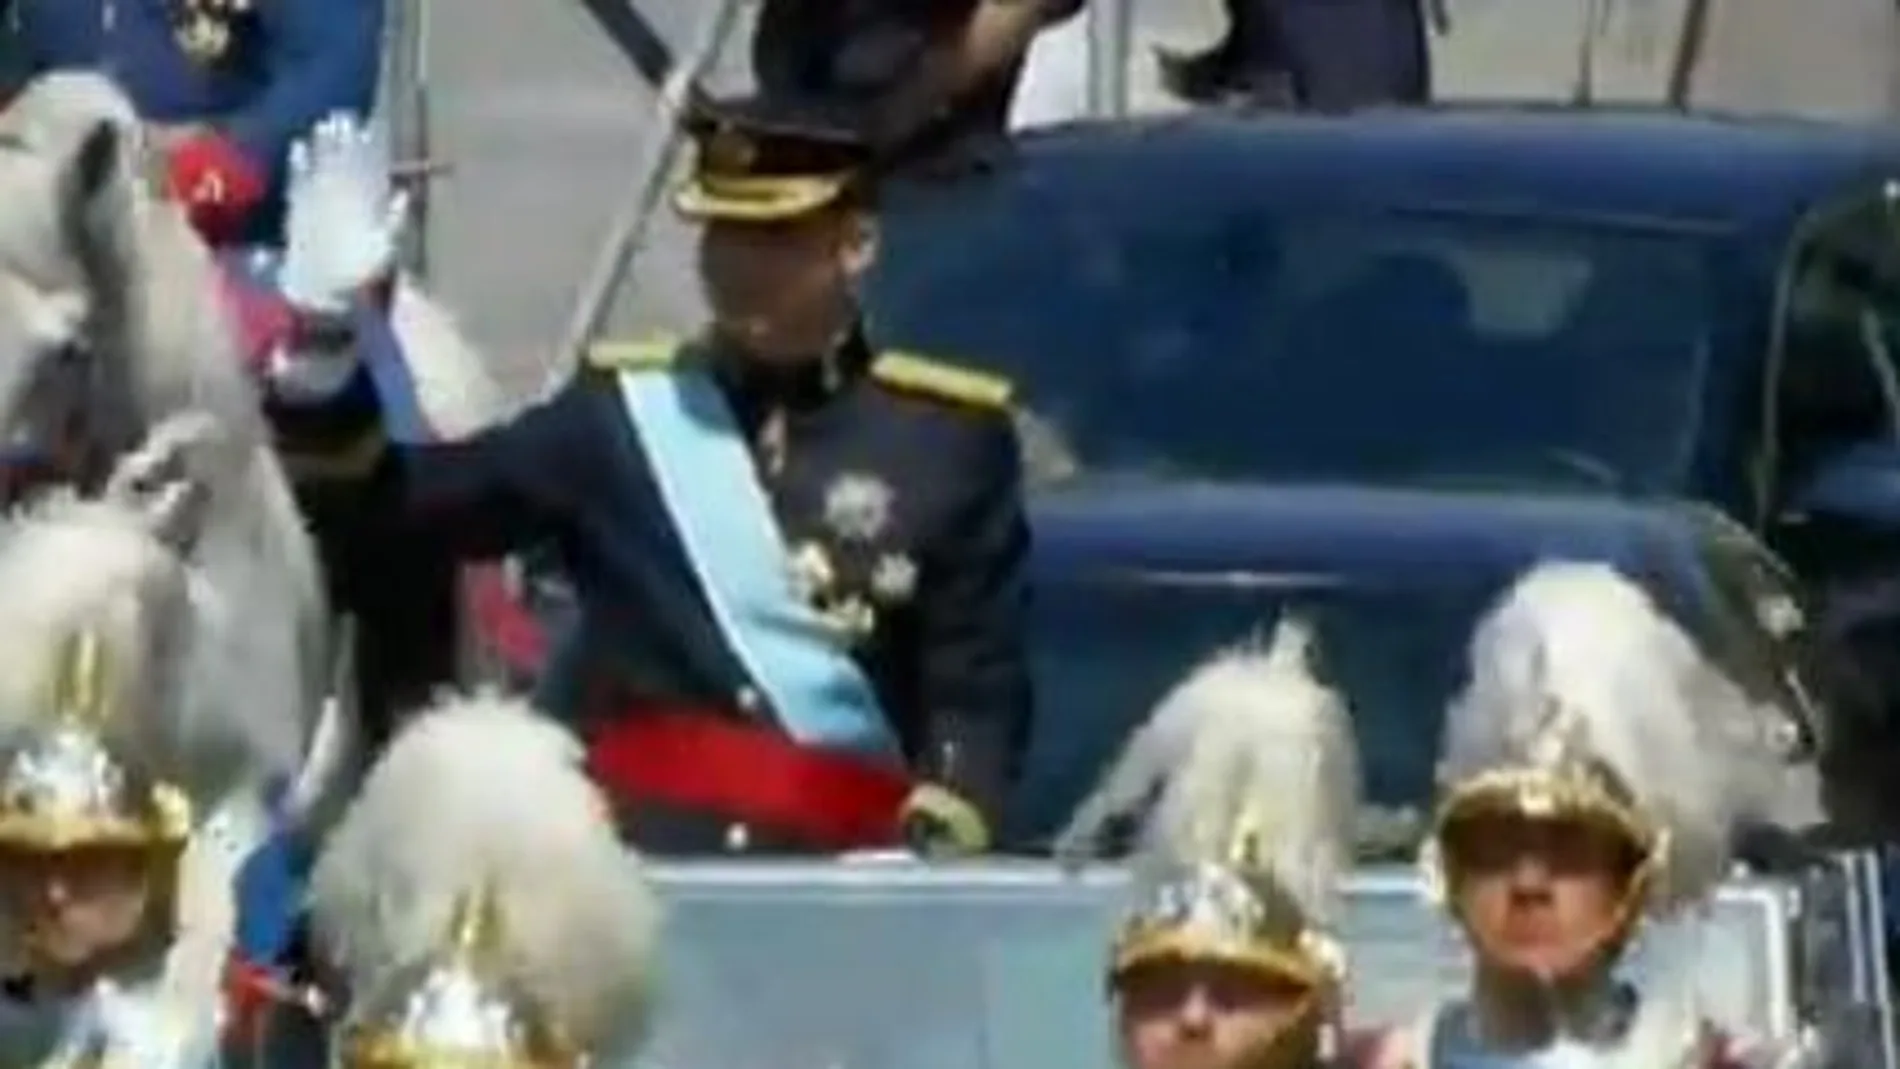 Los Reyes parten hacia el Palacio Real